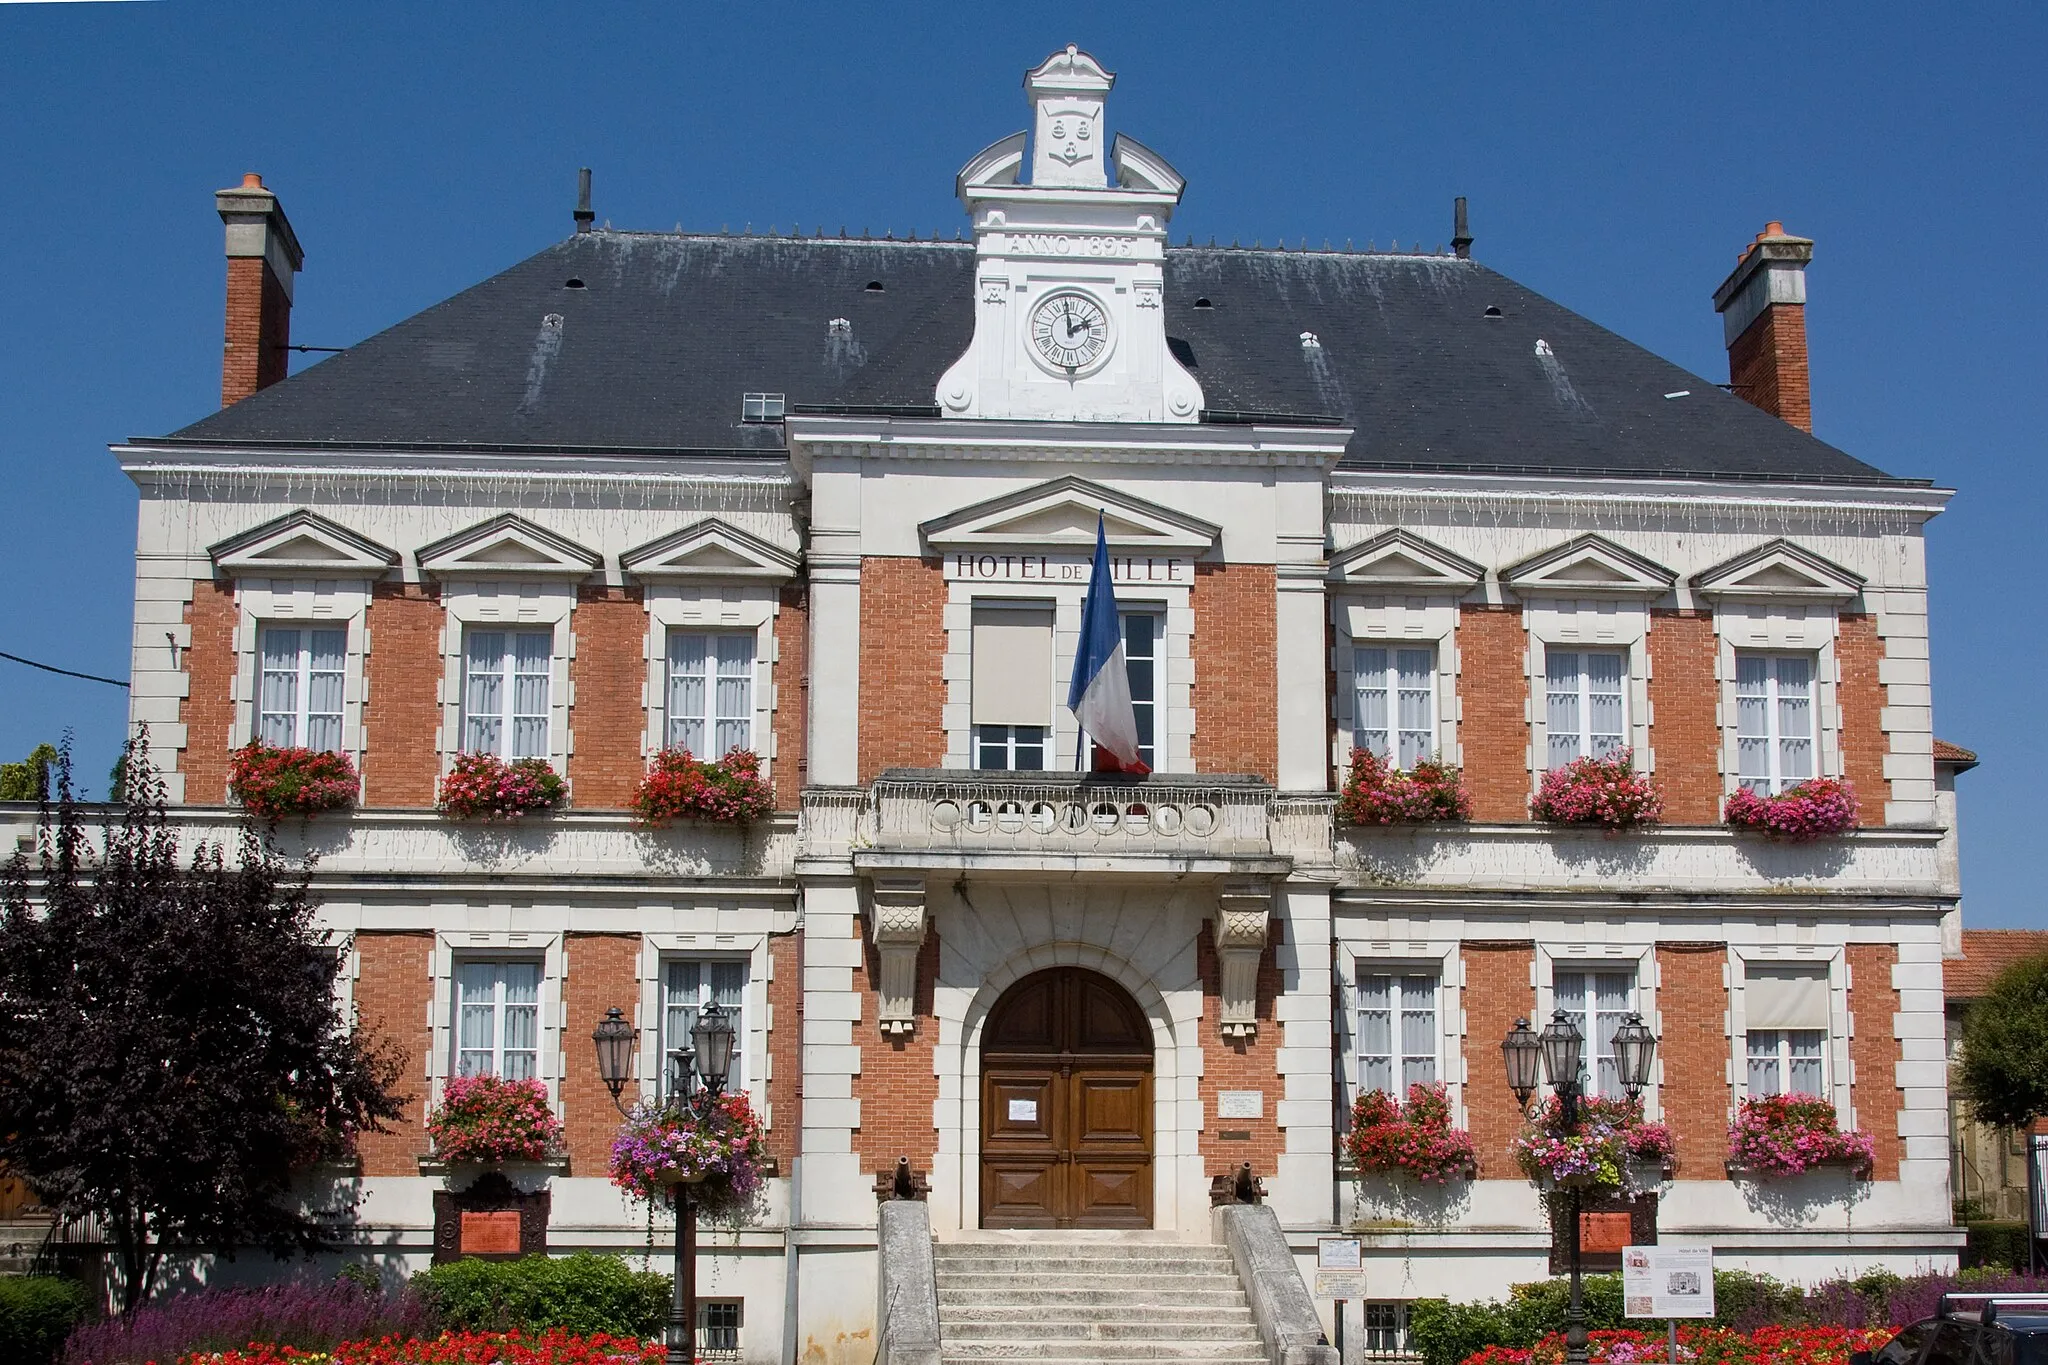 Photo showing: L'Hôtel de ville de Milly-la-Forêt, Milly-la-Forêt, Essonne, France